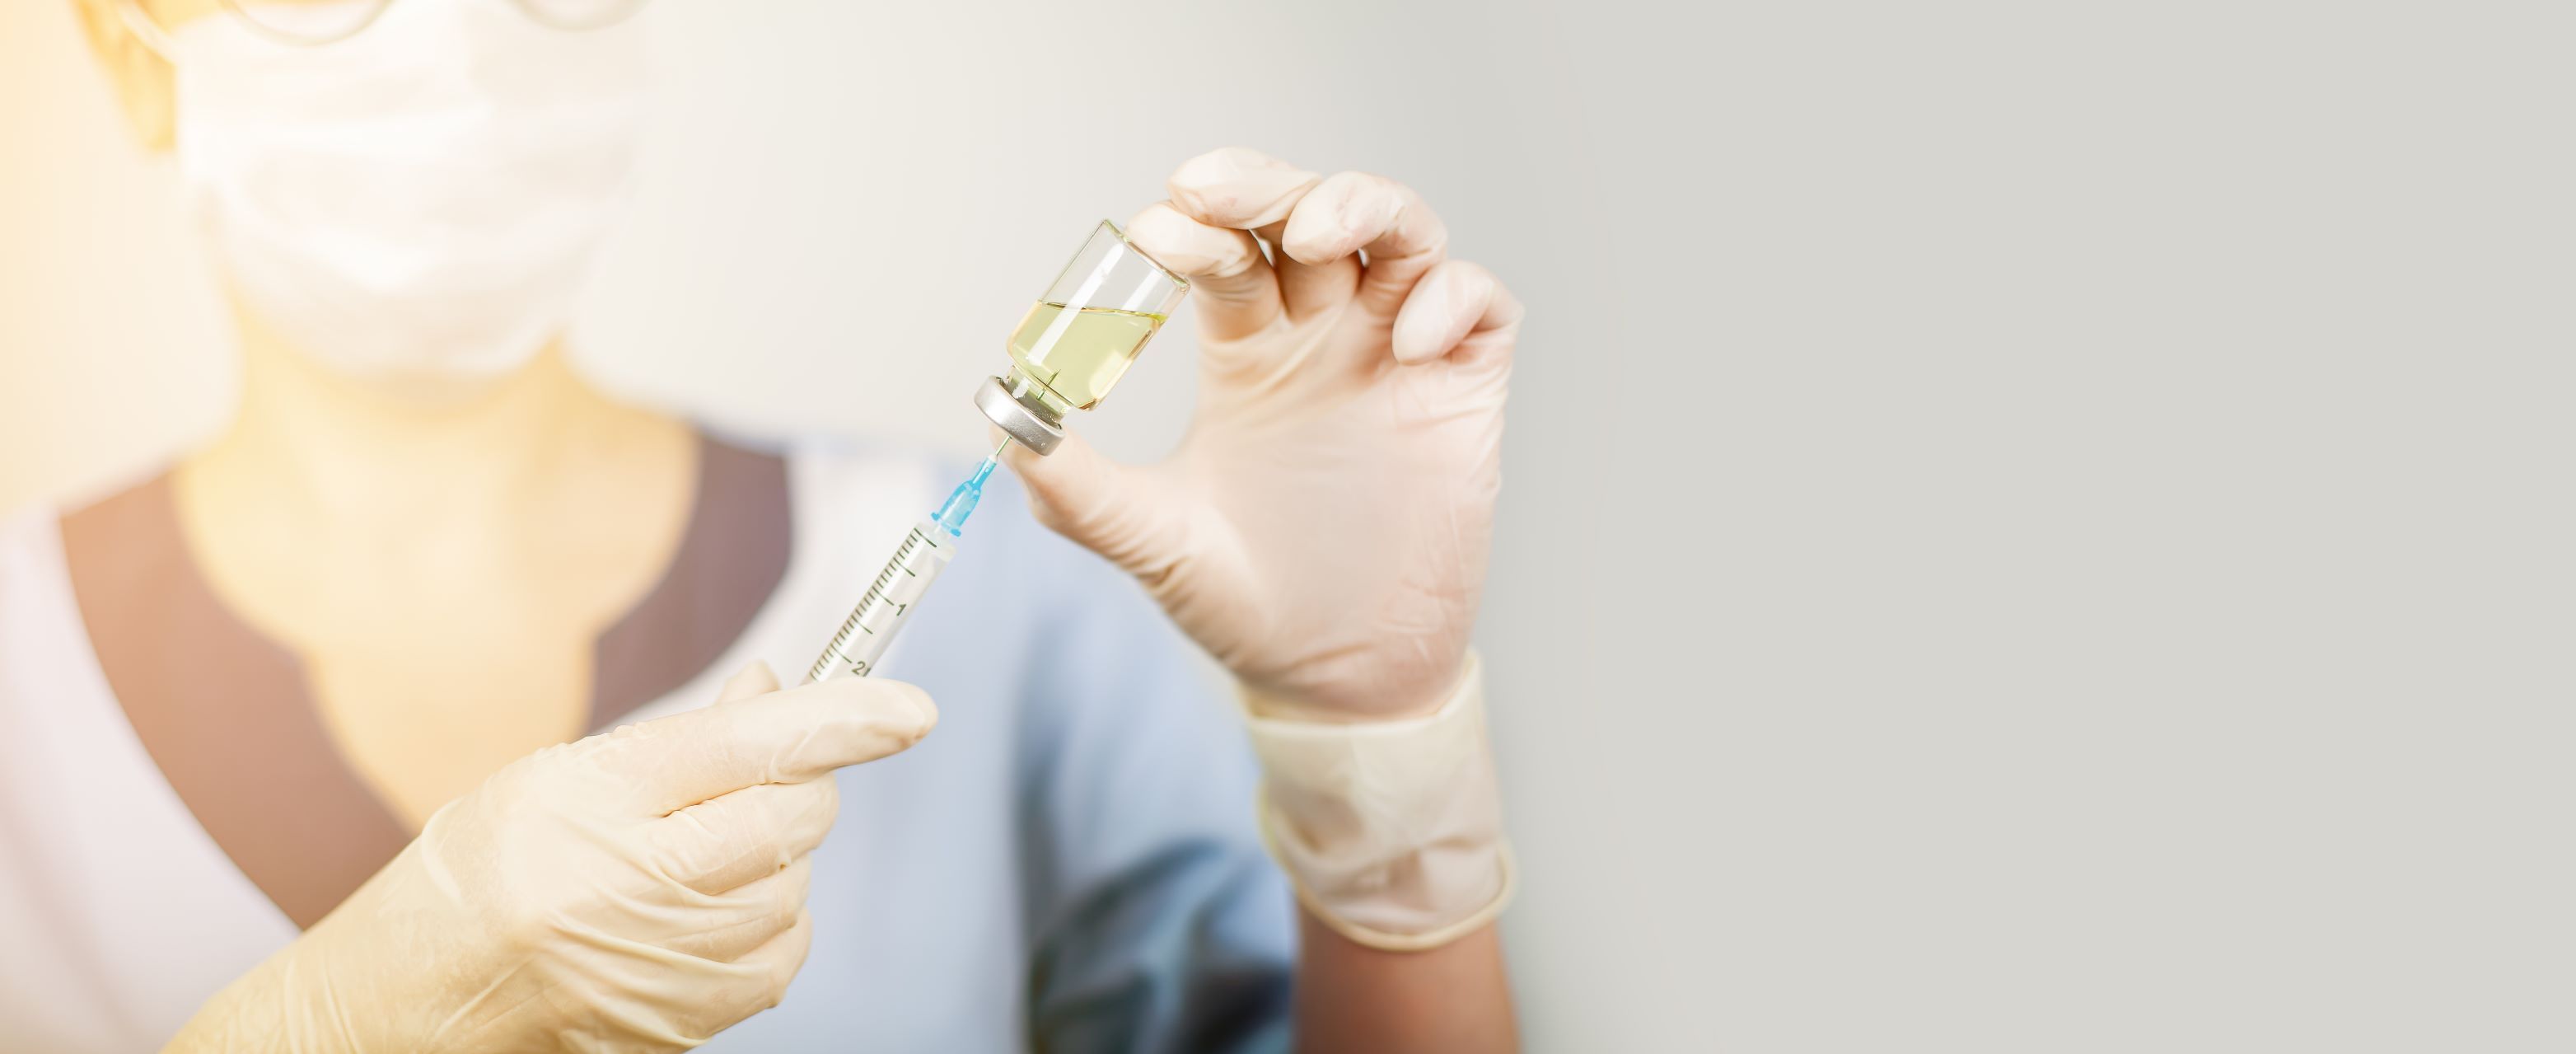 Szczepionka na raka - skuteczność chemio- i immunoterapii